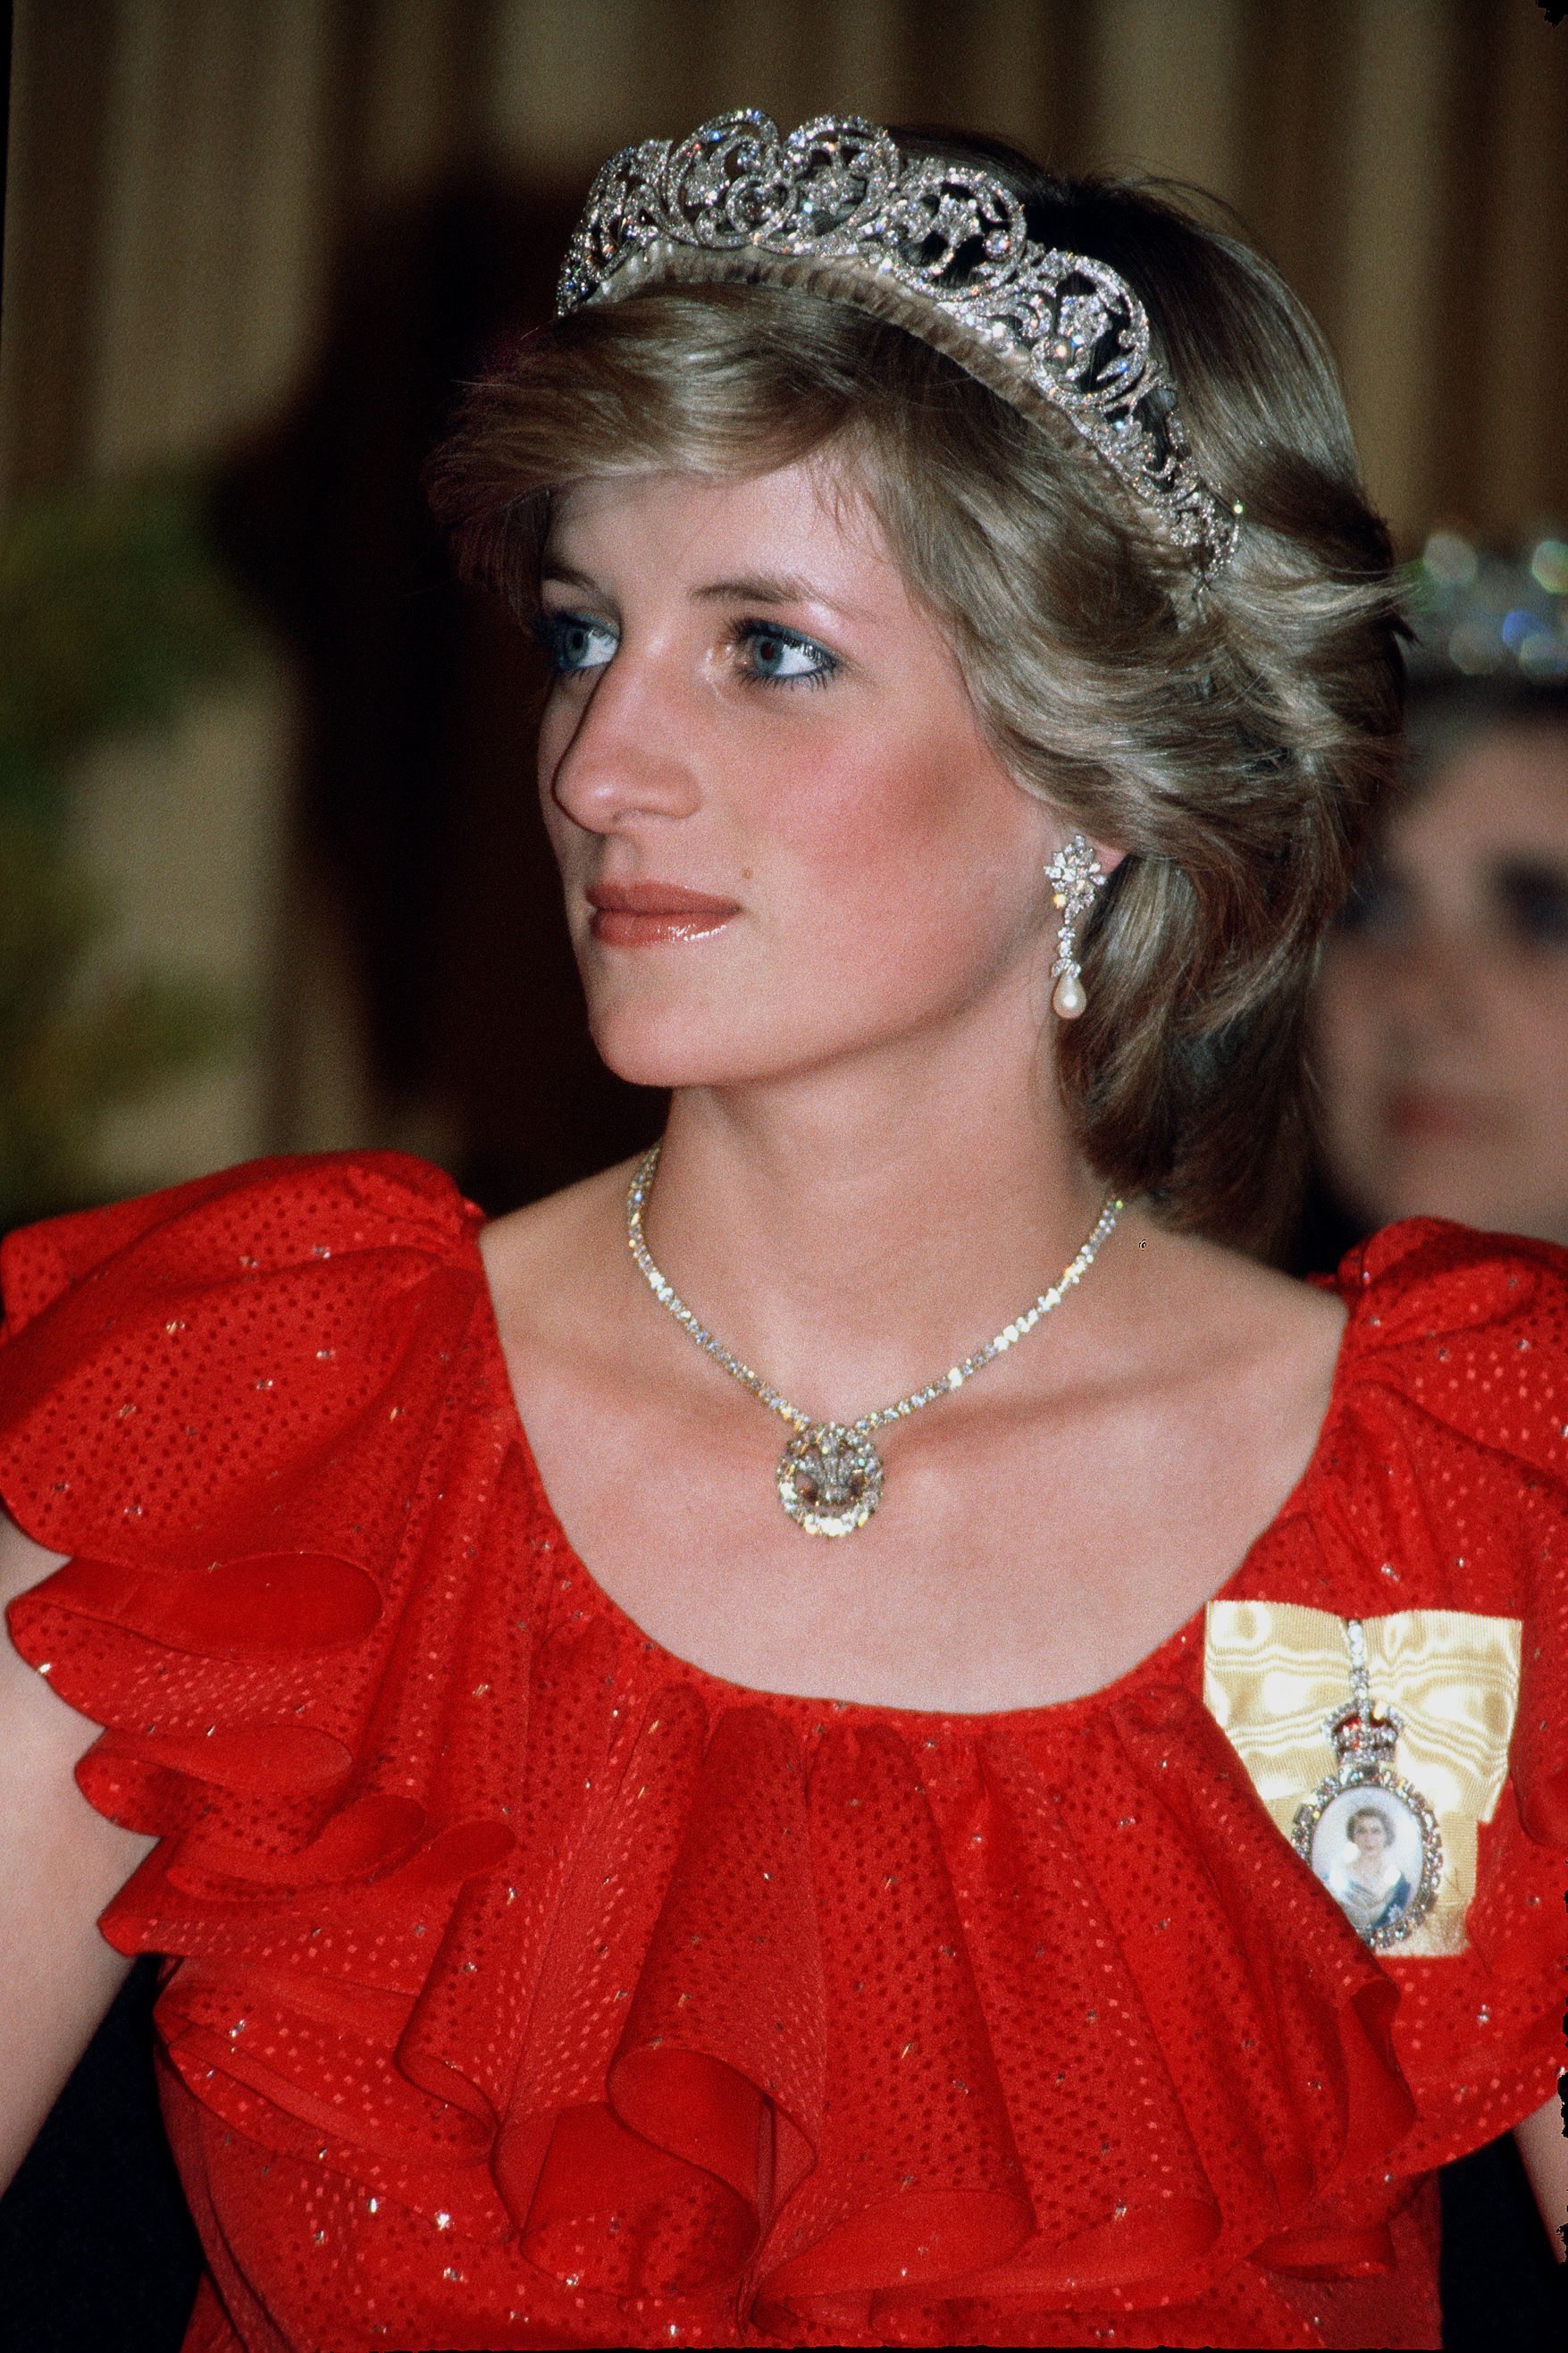 Diana hercegnő 1983-ban. Ő is kapott a királynőtől királyi családi rangjelzést.